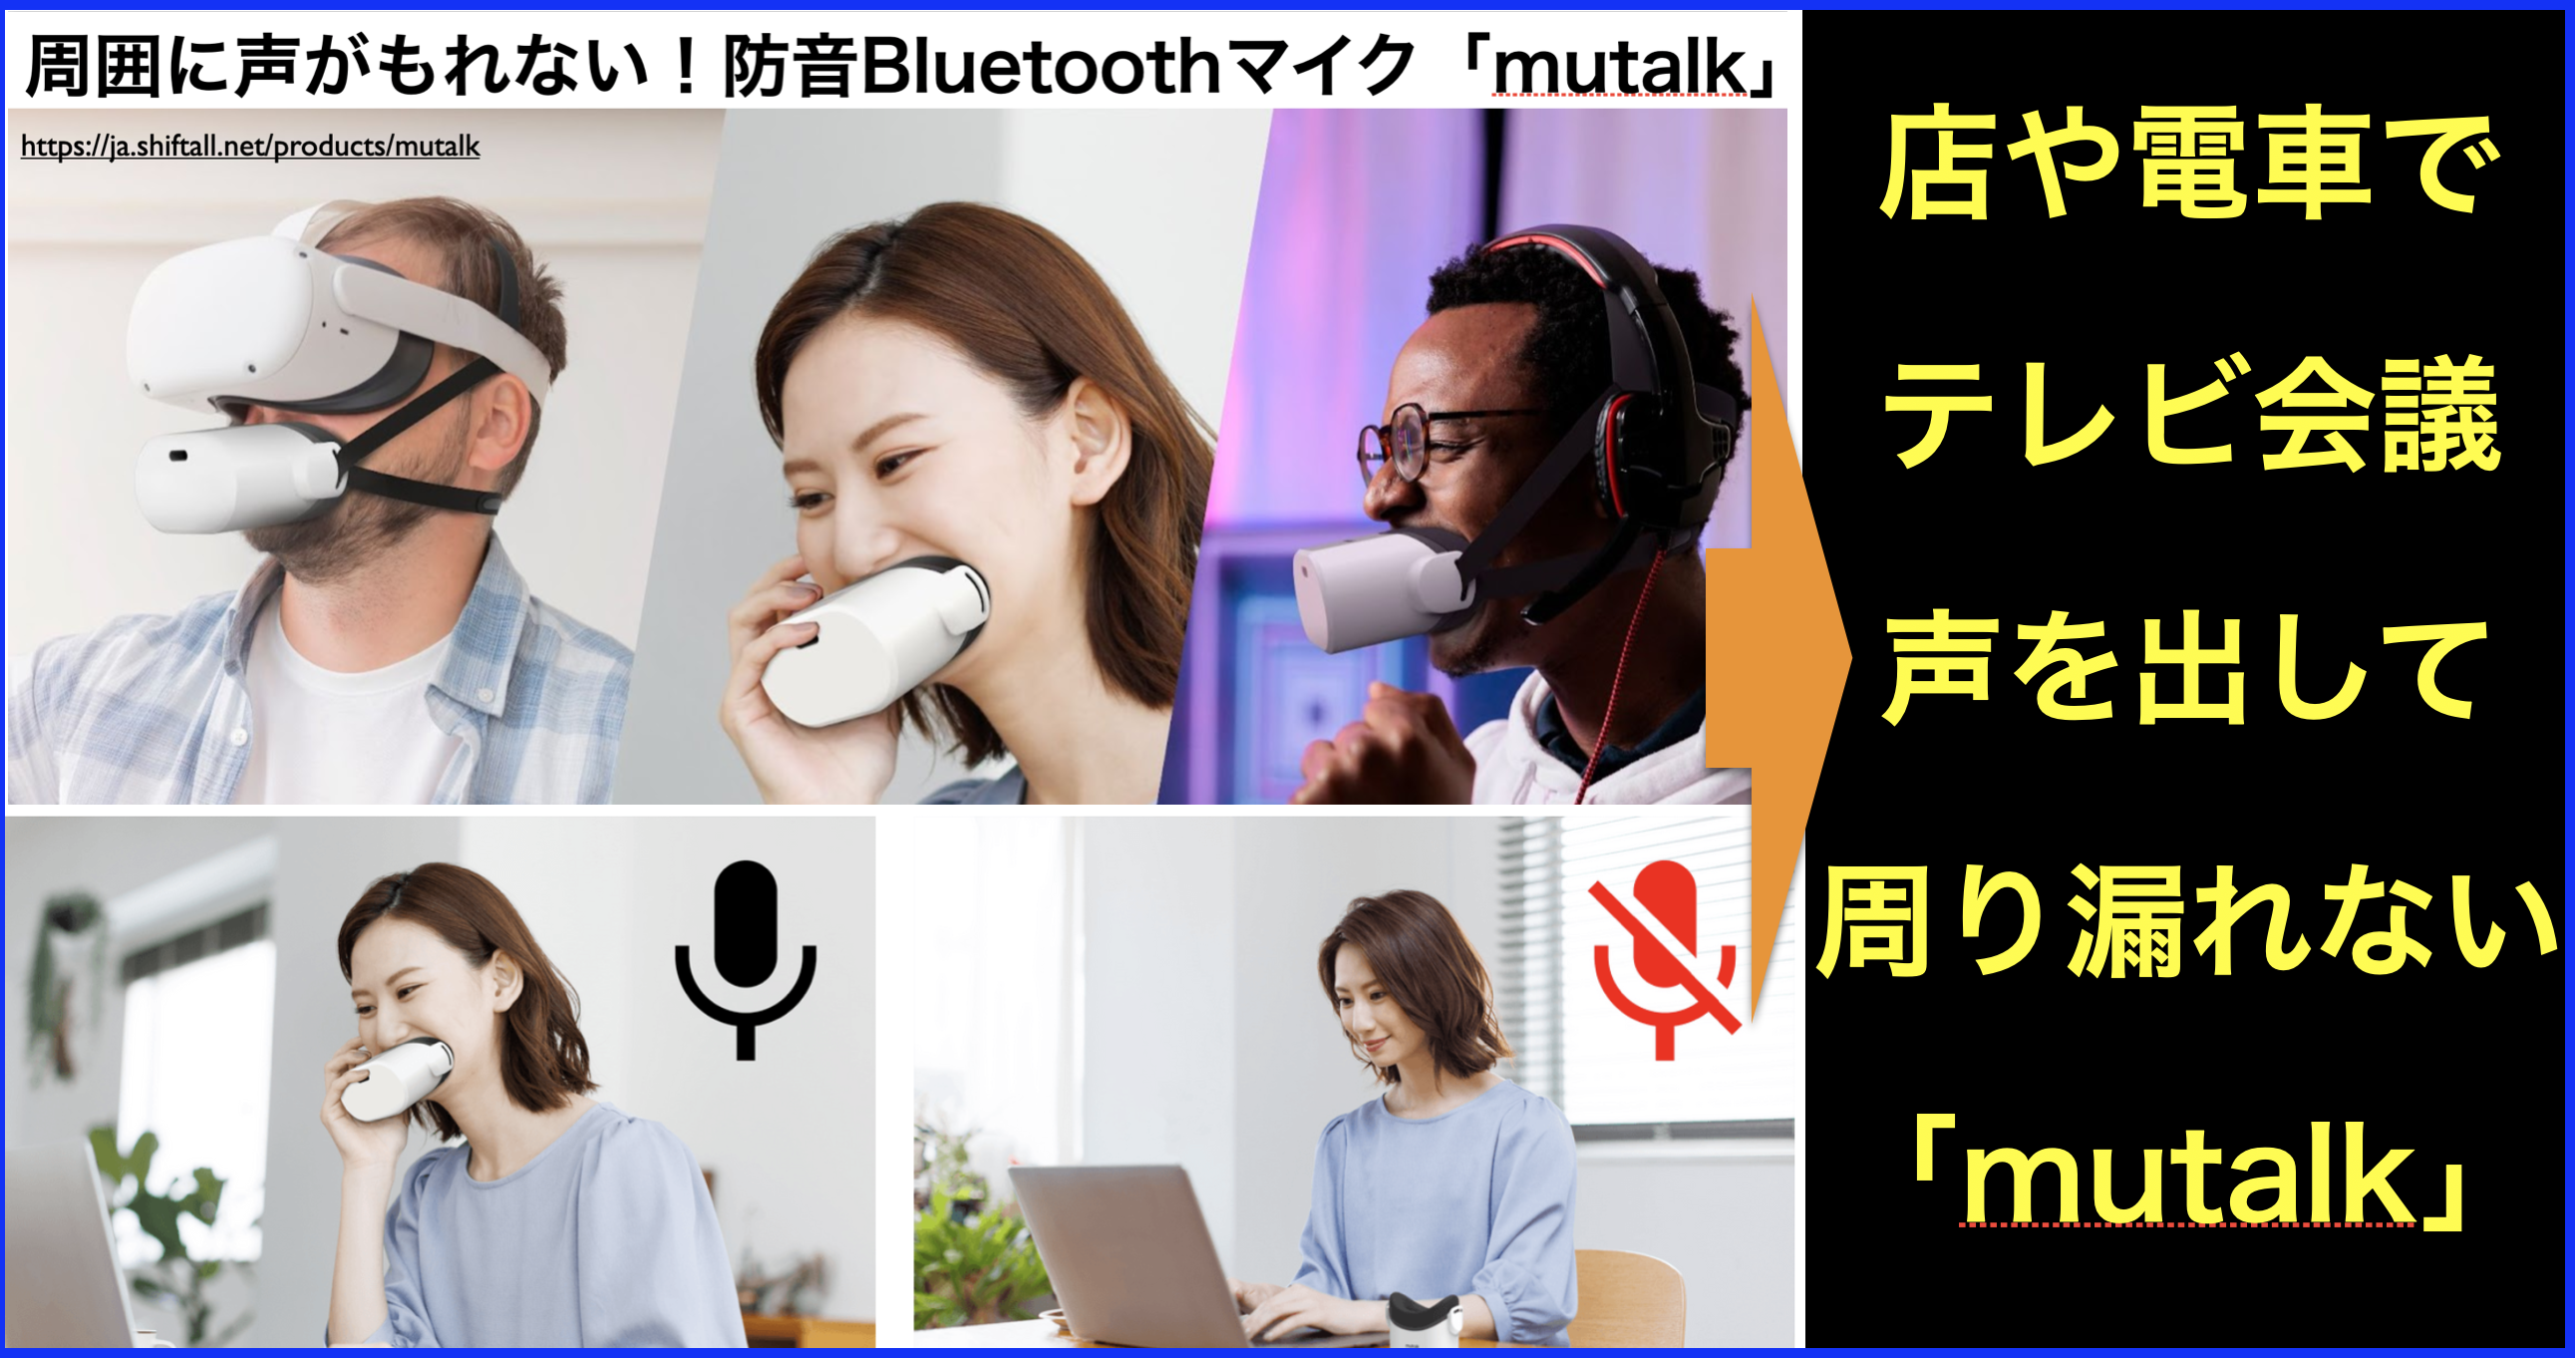 WEB会議に革命!Bluetooth防音マイク・マスク一体型mutalk | ネット